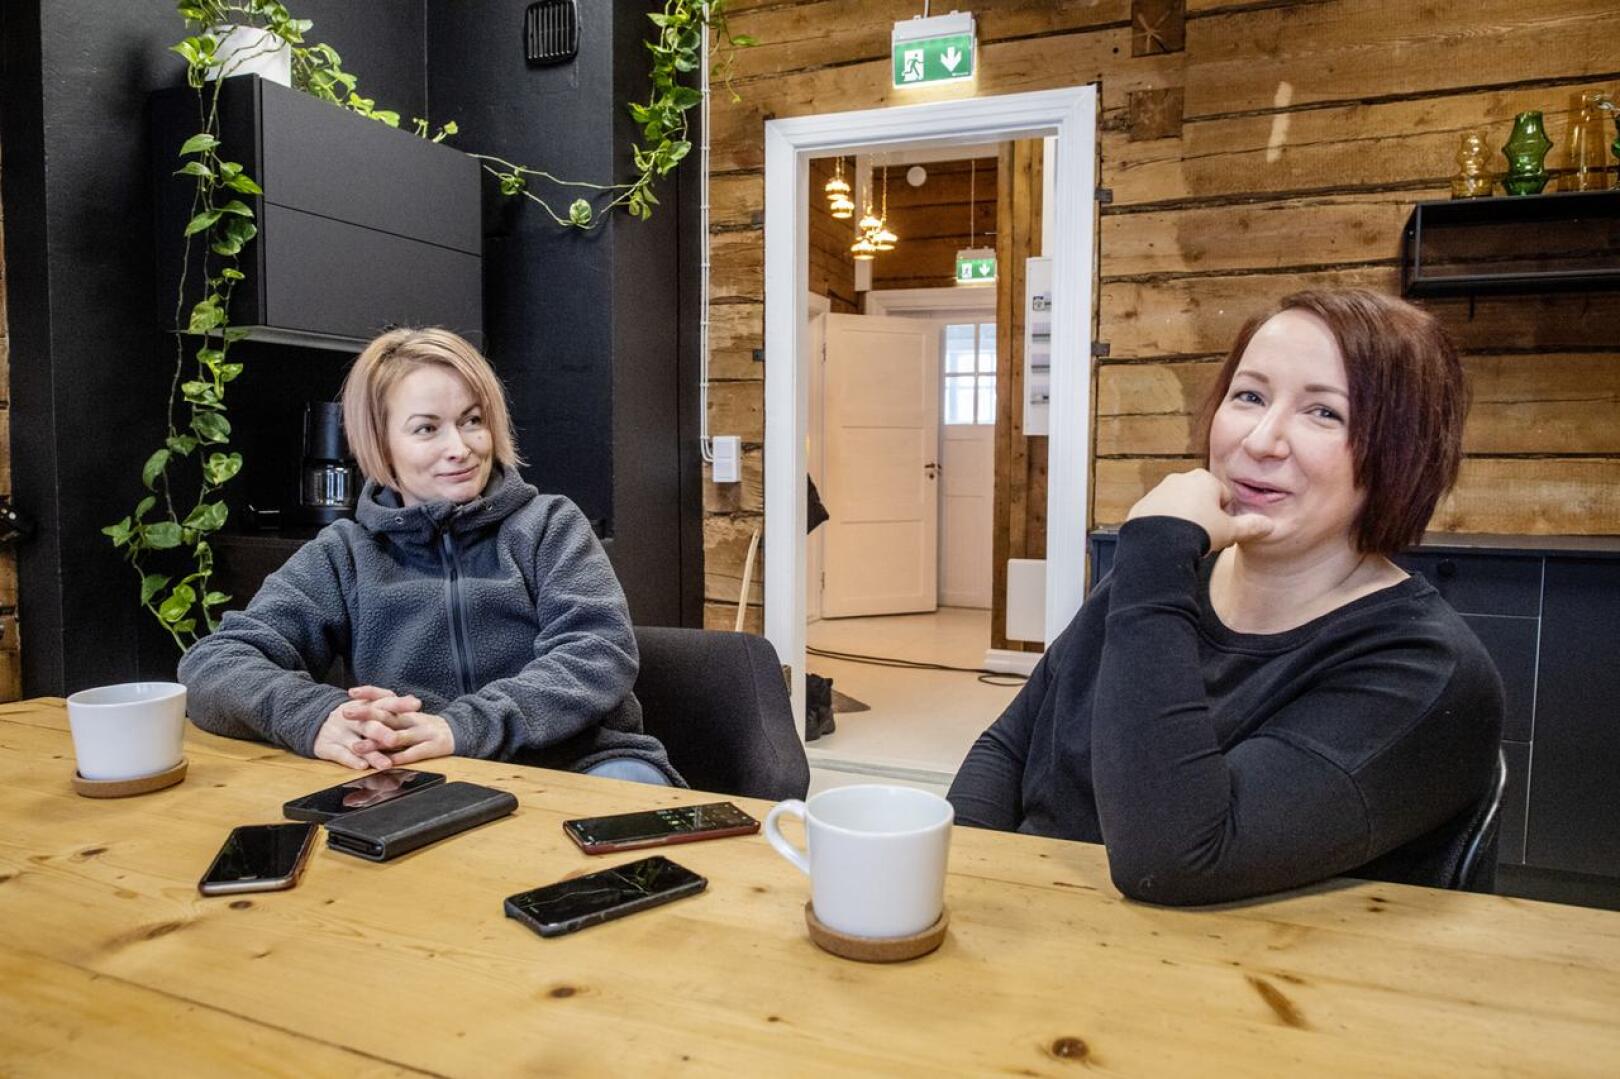 Sisustussuunnittelijat Jenny Pisilä ja Anni Haikola ystävystyivät opiskellessaan sisustusuunnittelijoiksi. Nyt heillä on yhteinen Sisustus Visiointi -yritys.